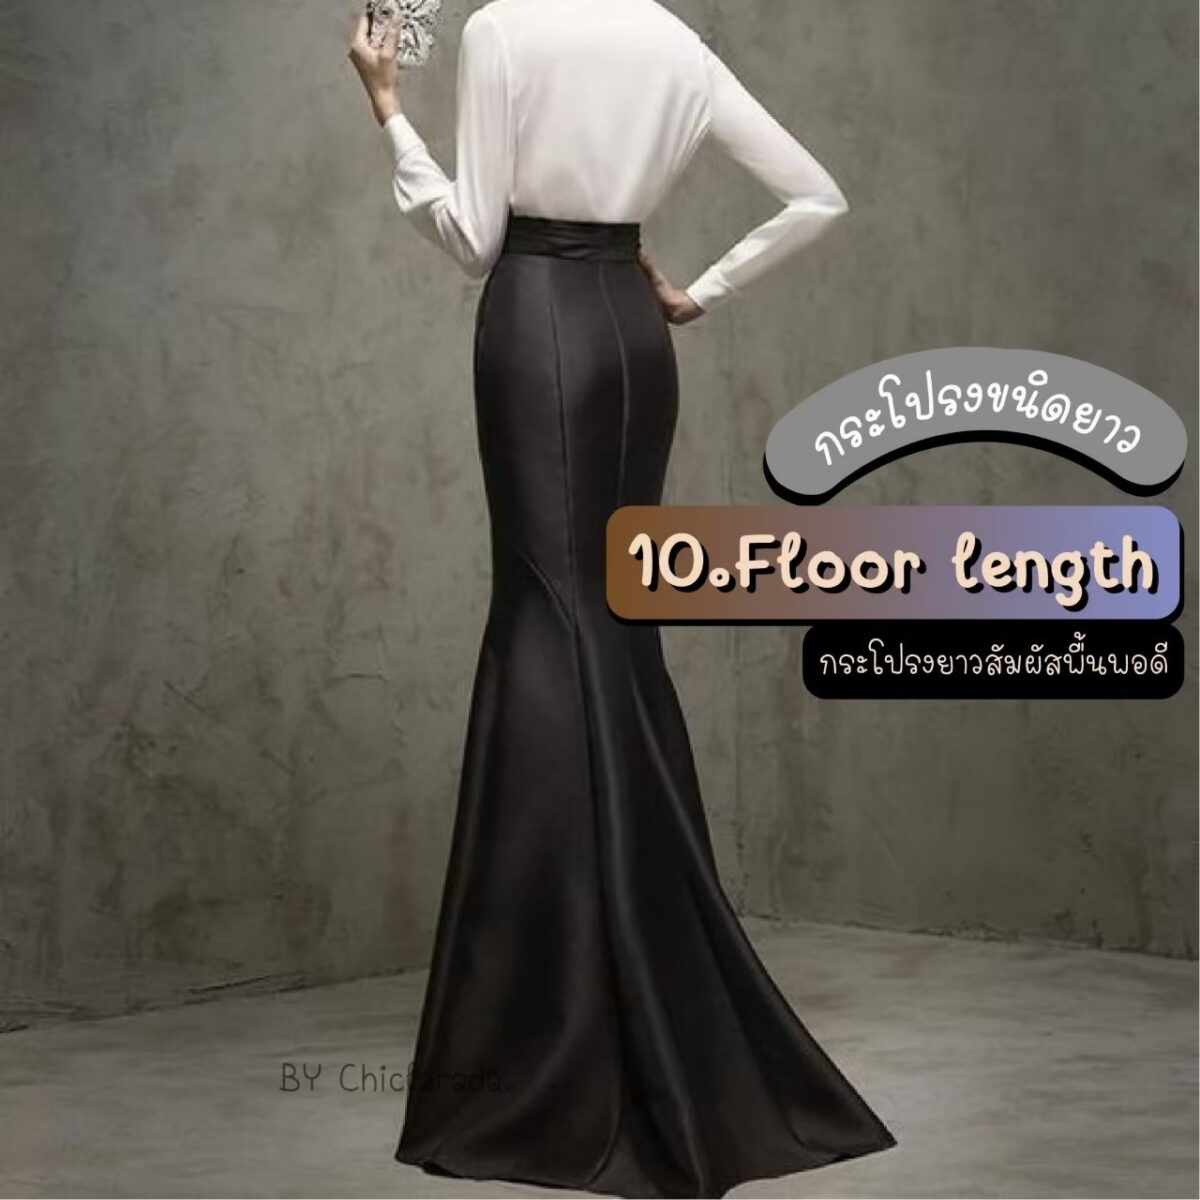 Floor length คือกระโปรงที่ยาวถึงพื้นพอดี